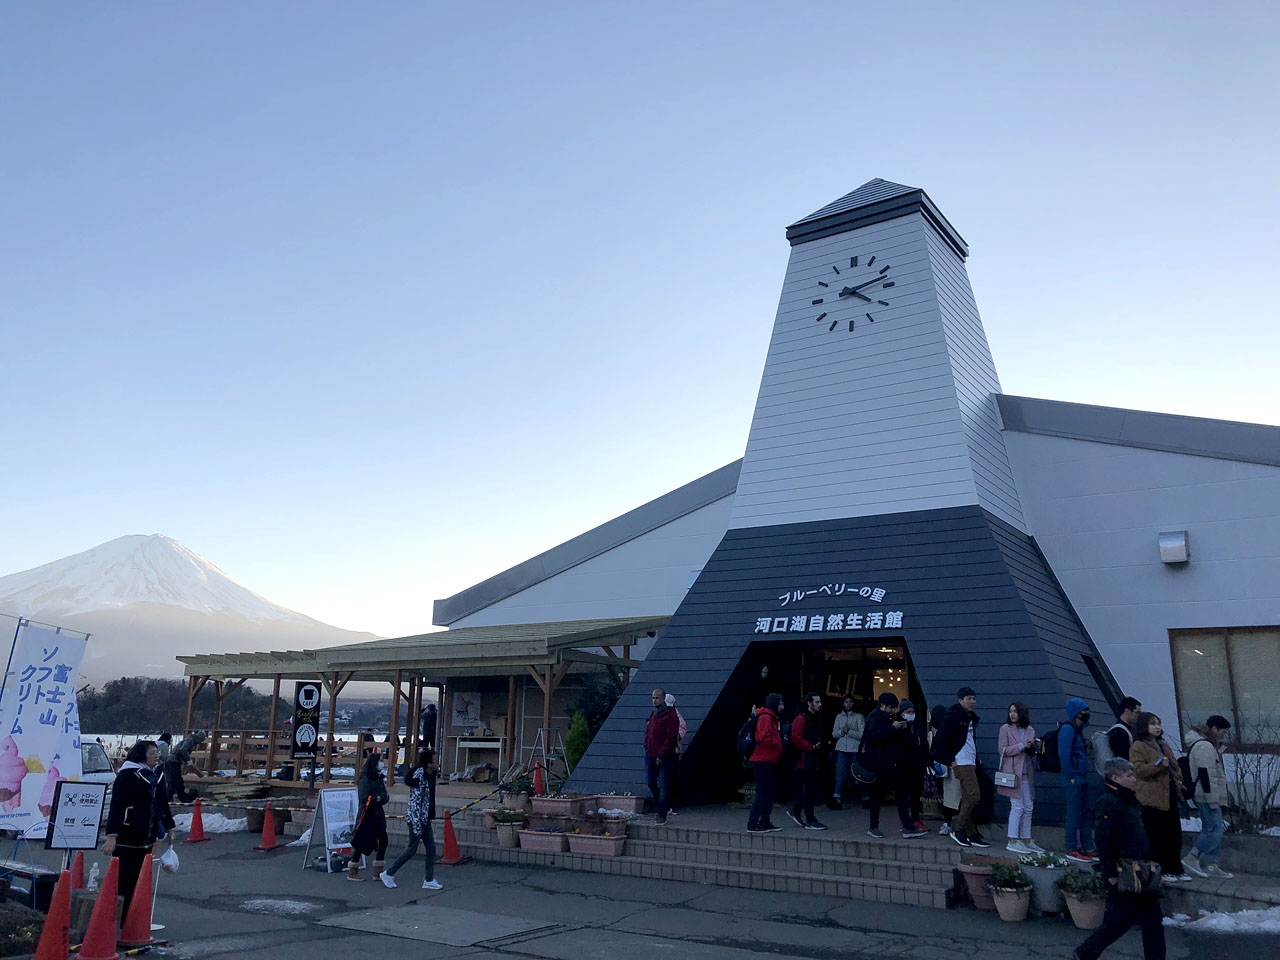 大石公園 四季折々の花街道と絶景の富士山 河口湖 Net